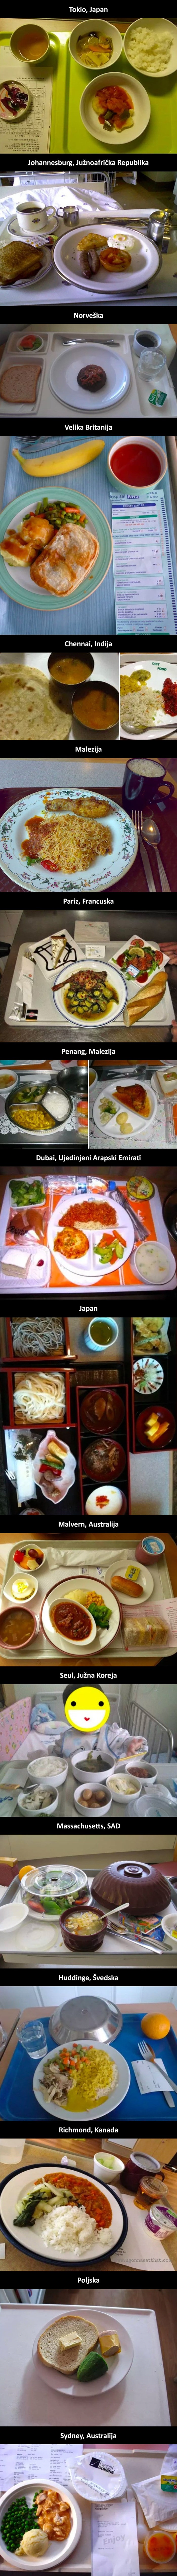 Ljudi iz raznih dijelova svijeta slikali su hranu koju su dobili u bolnici, pogledajte gdje je najbolja